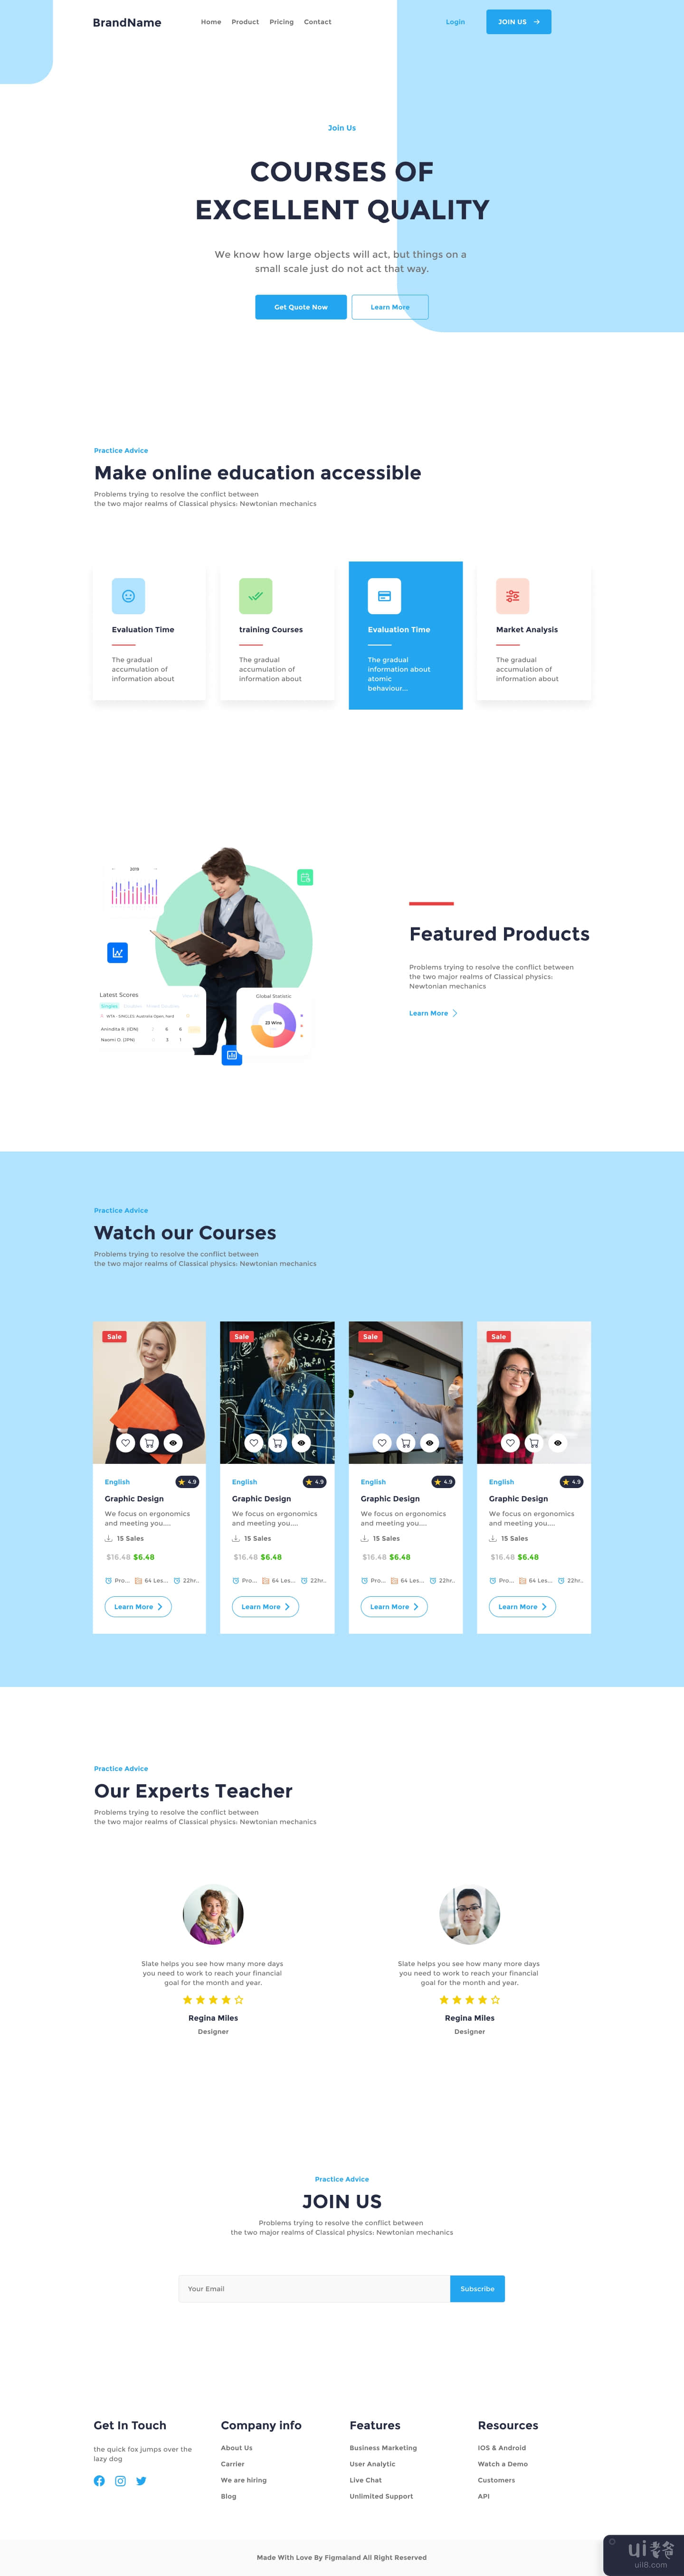 Course Boffin - figma 课程网站(Course Boffin - figma course website)插图2